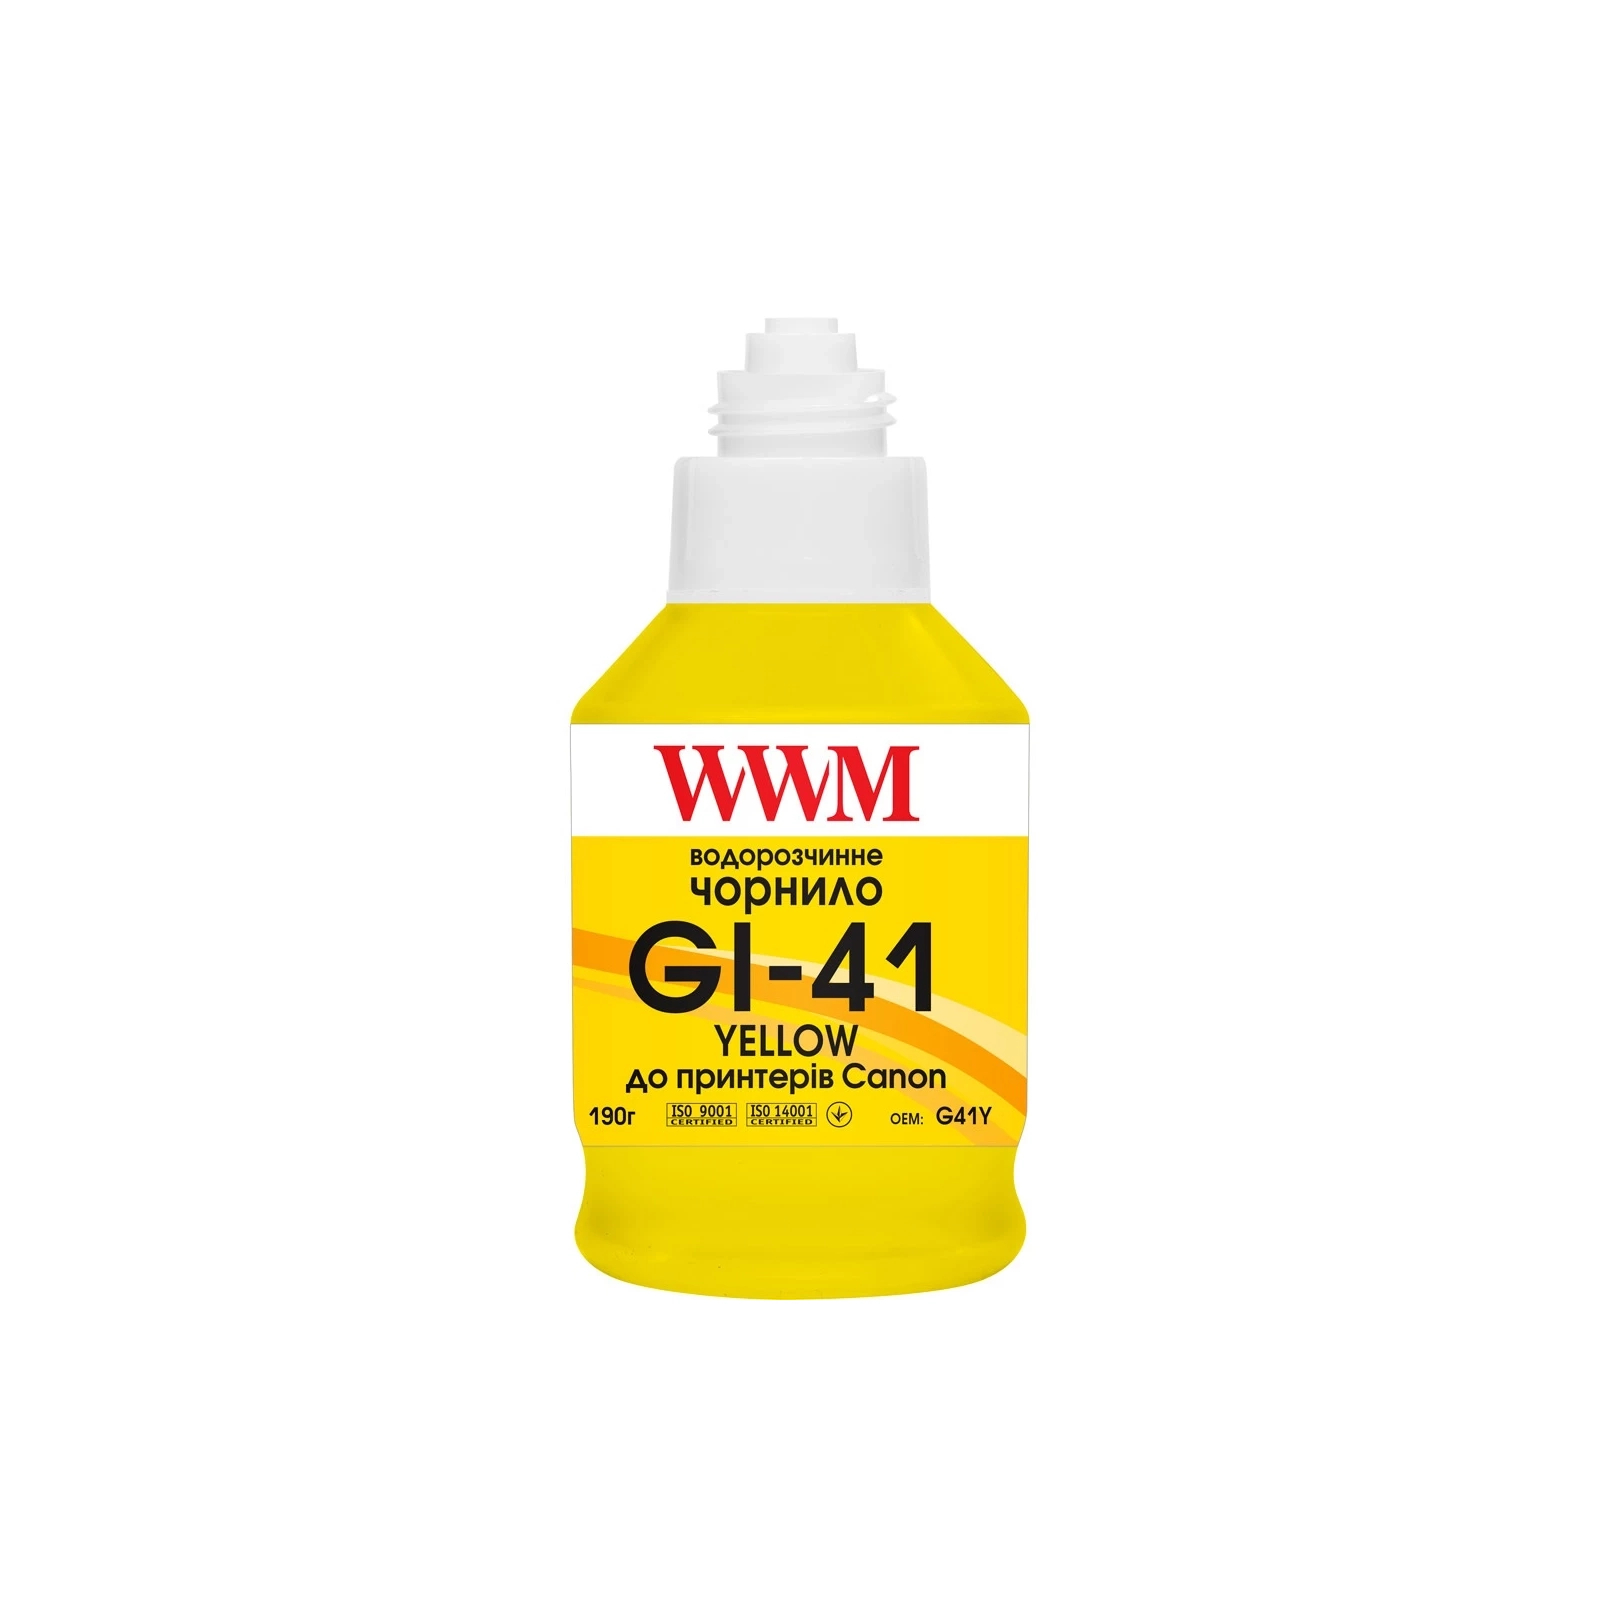 Чернила WWM Canon GI-41 для Pixma G2420/3420 190г Cyan (KeyLock) (G41C) изображение 2